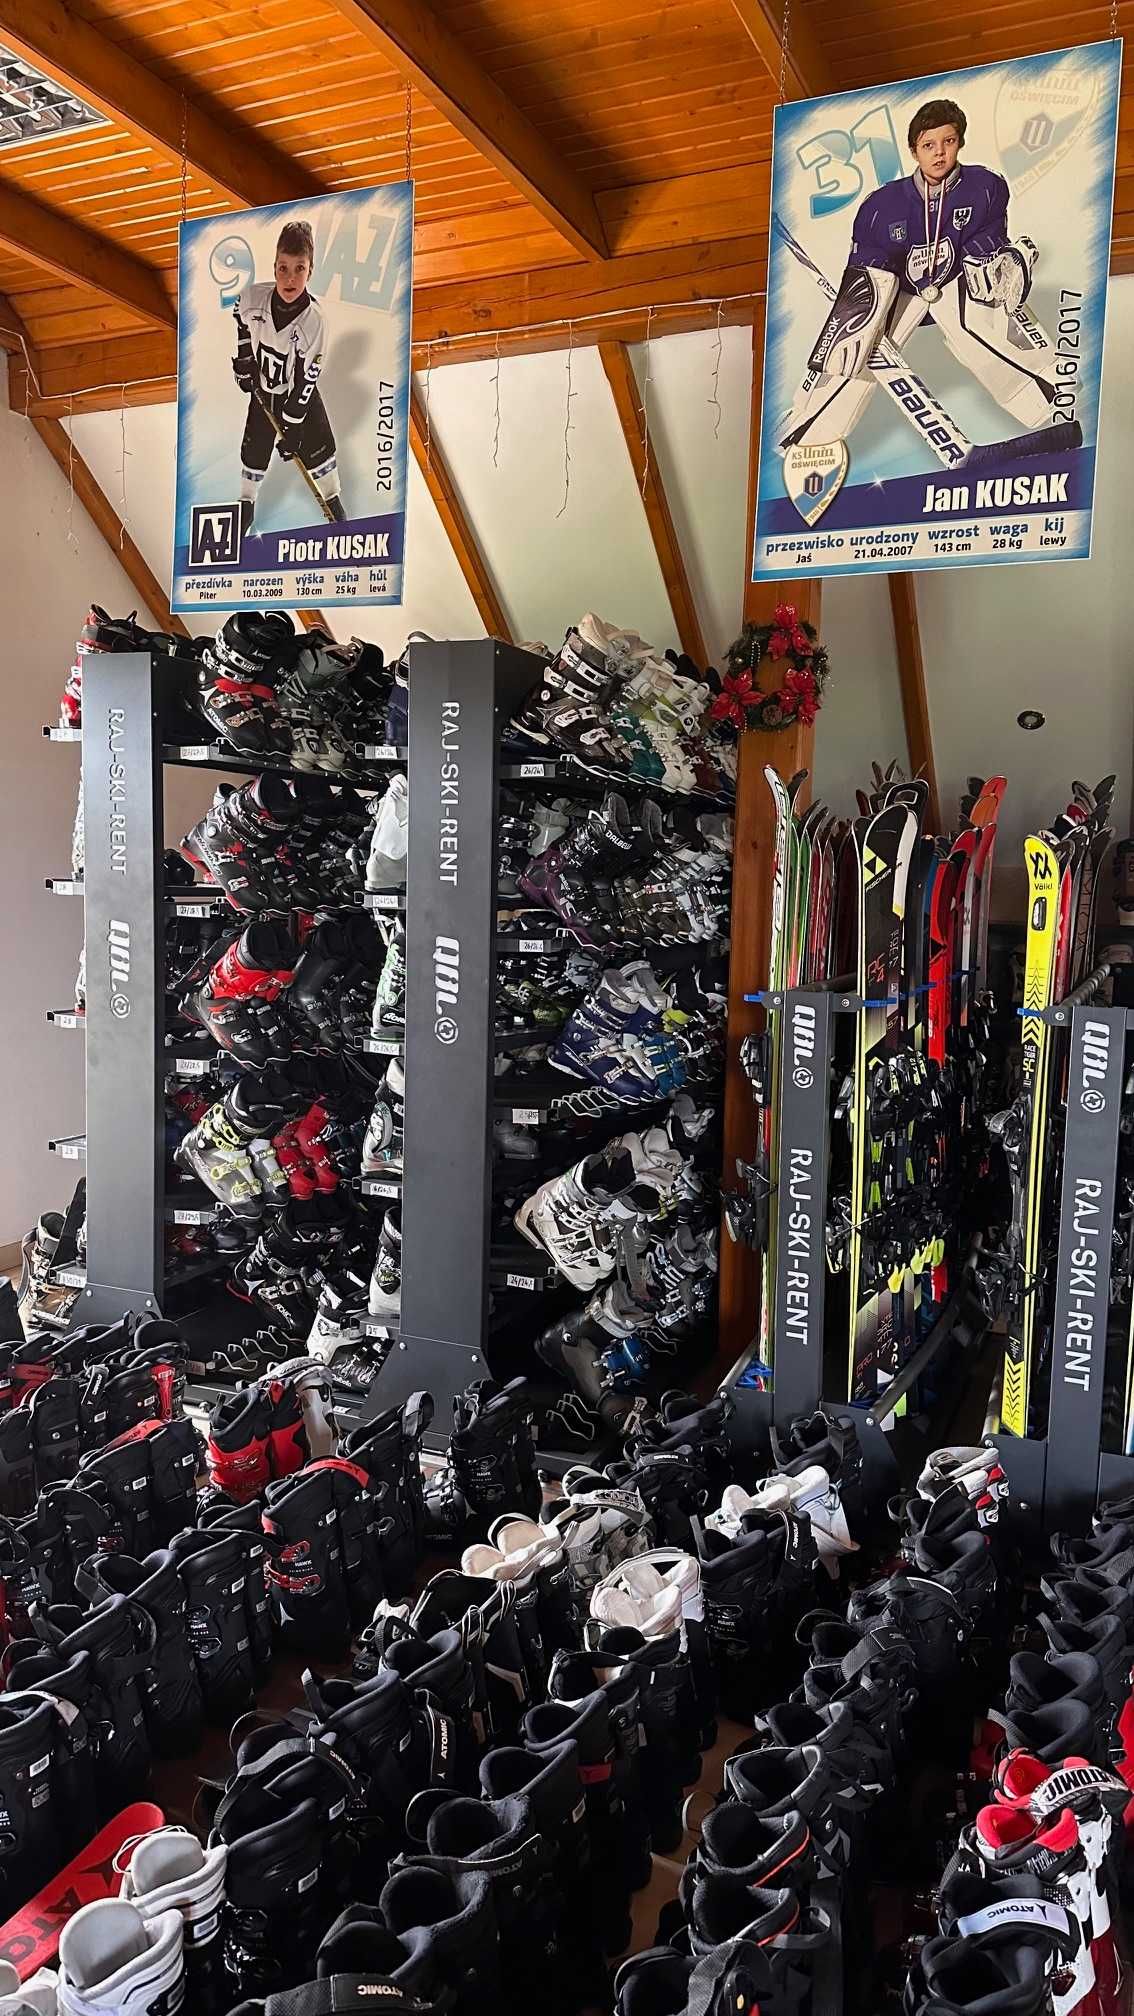 Narty buty kaski snowboardy, serwis i wypożyczalnia duży wybór